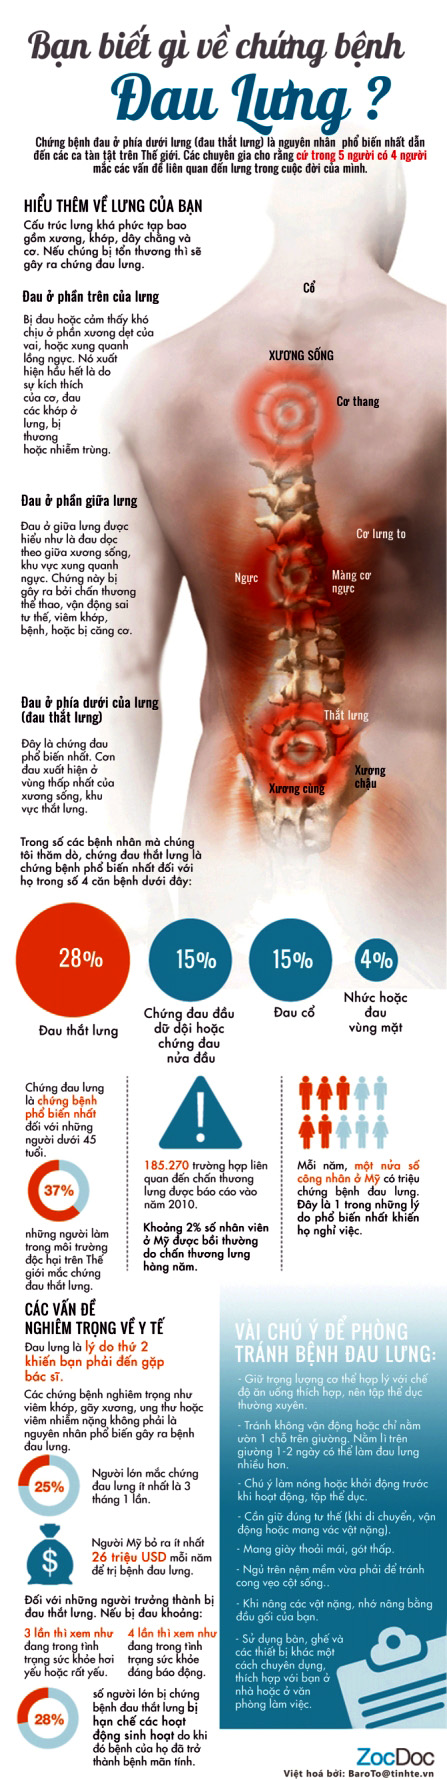 Những điều cần biết về bệnh đau lưng